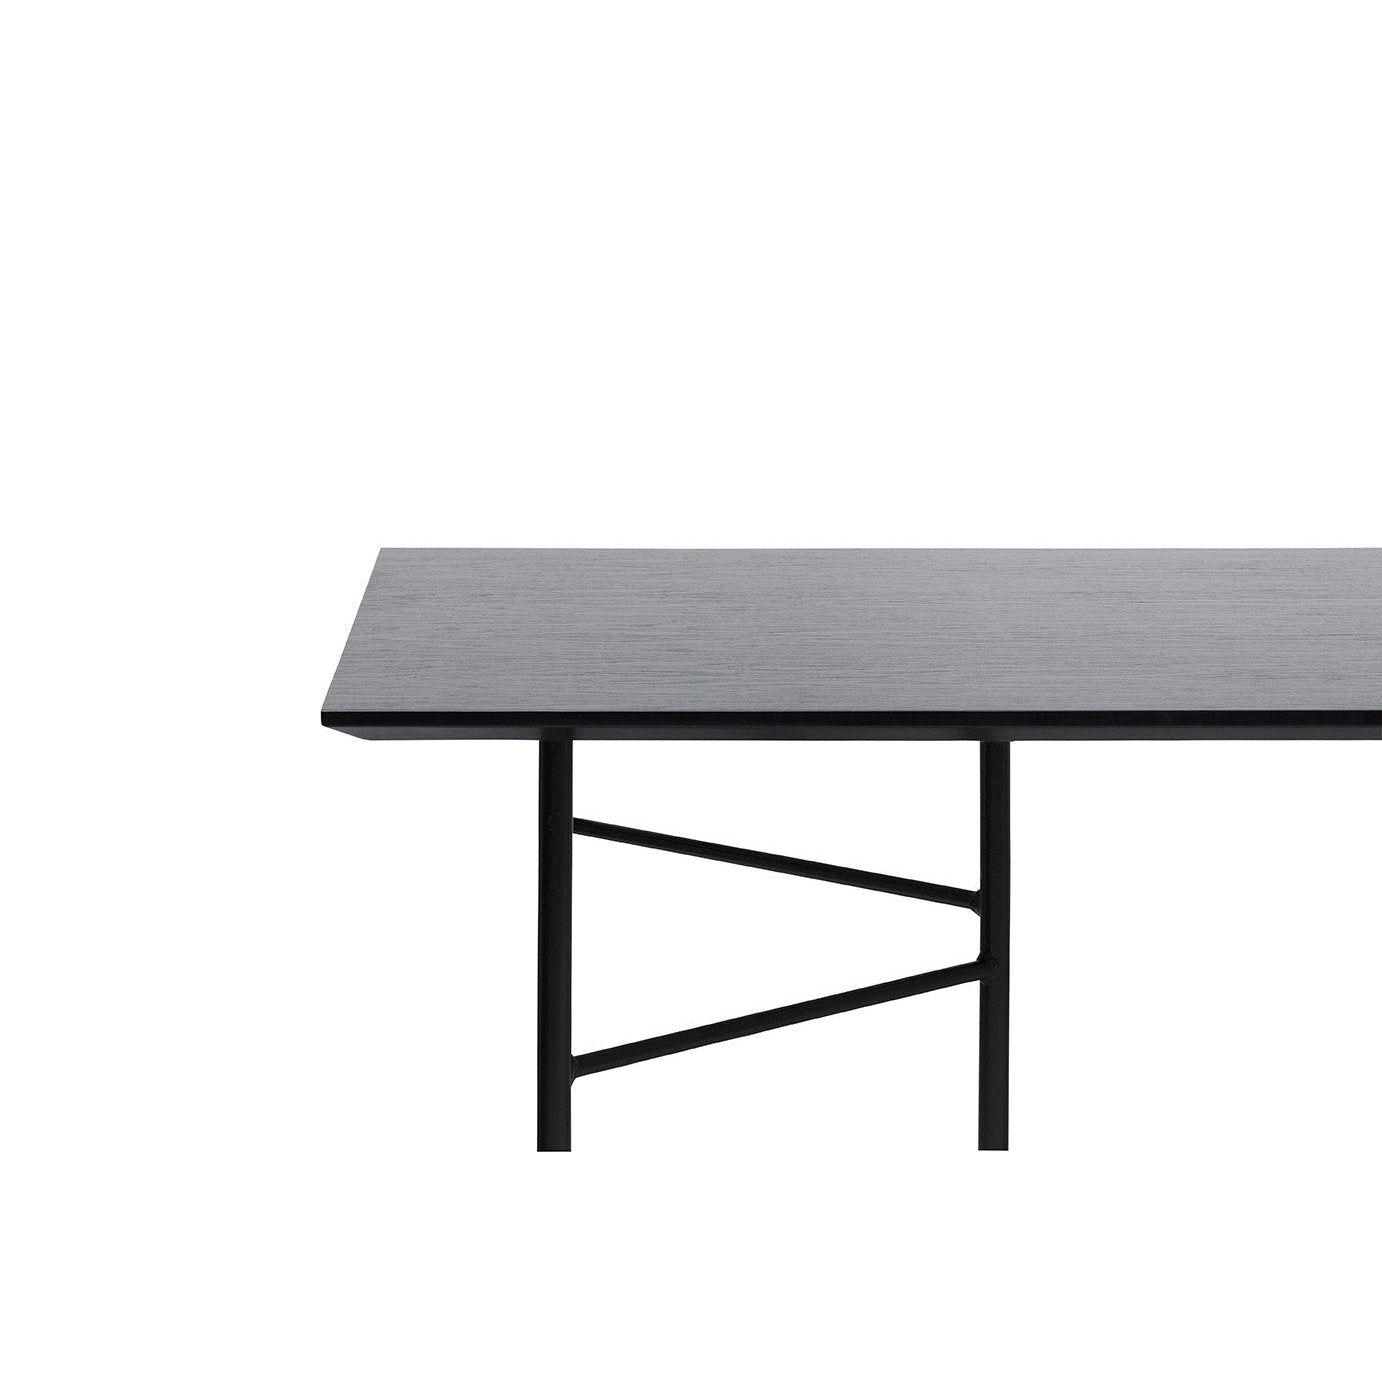 Ferm Living Mingle Table Top 160 cm, verniz de carvalho preto